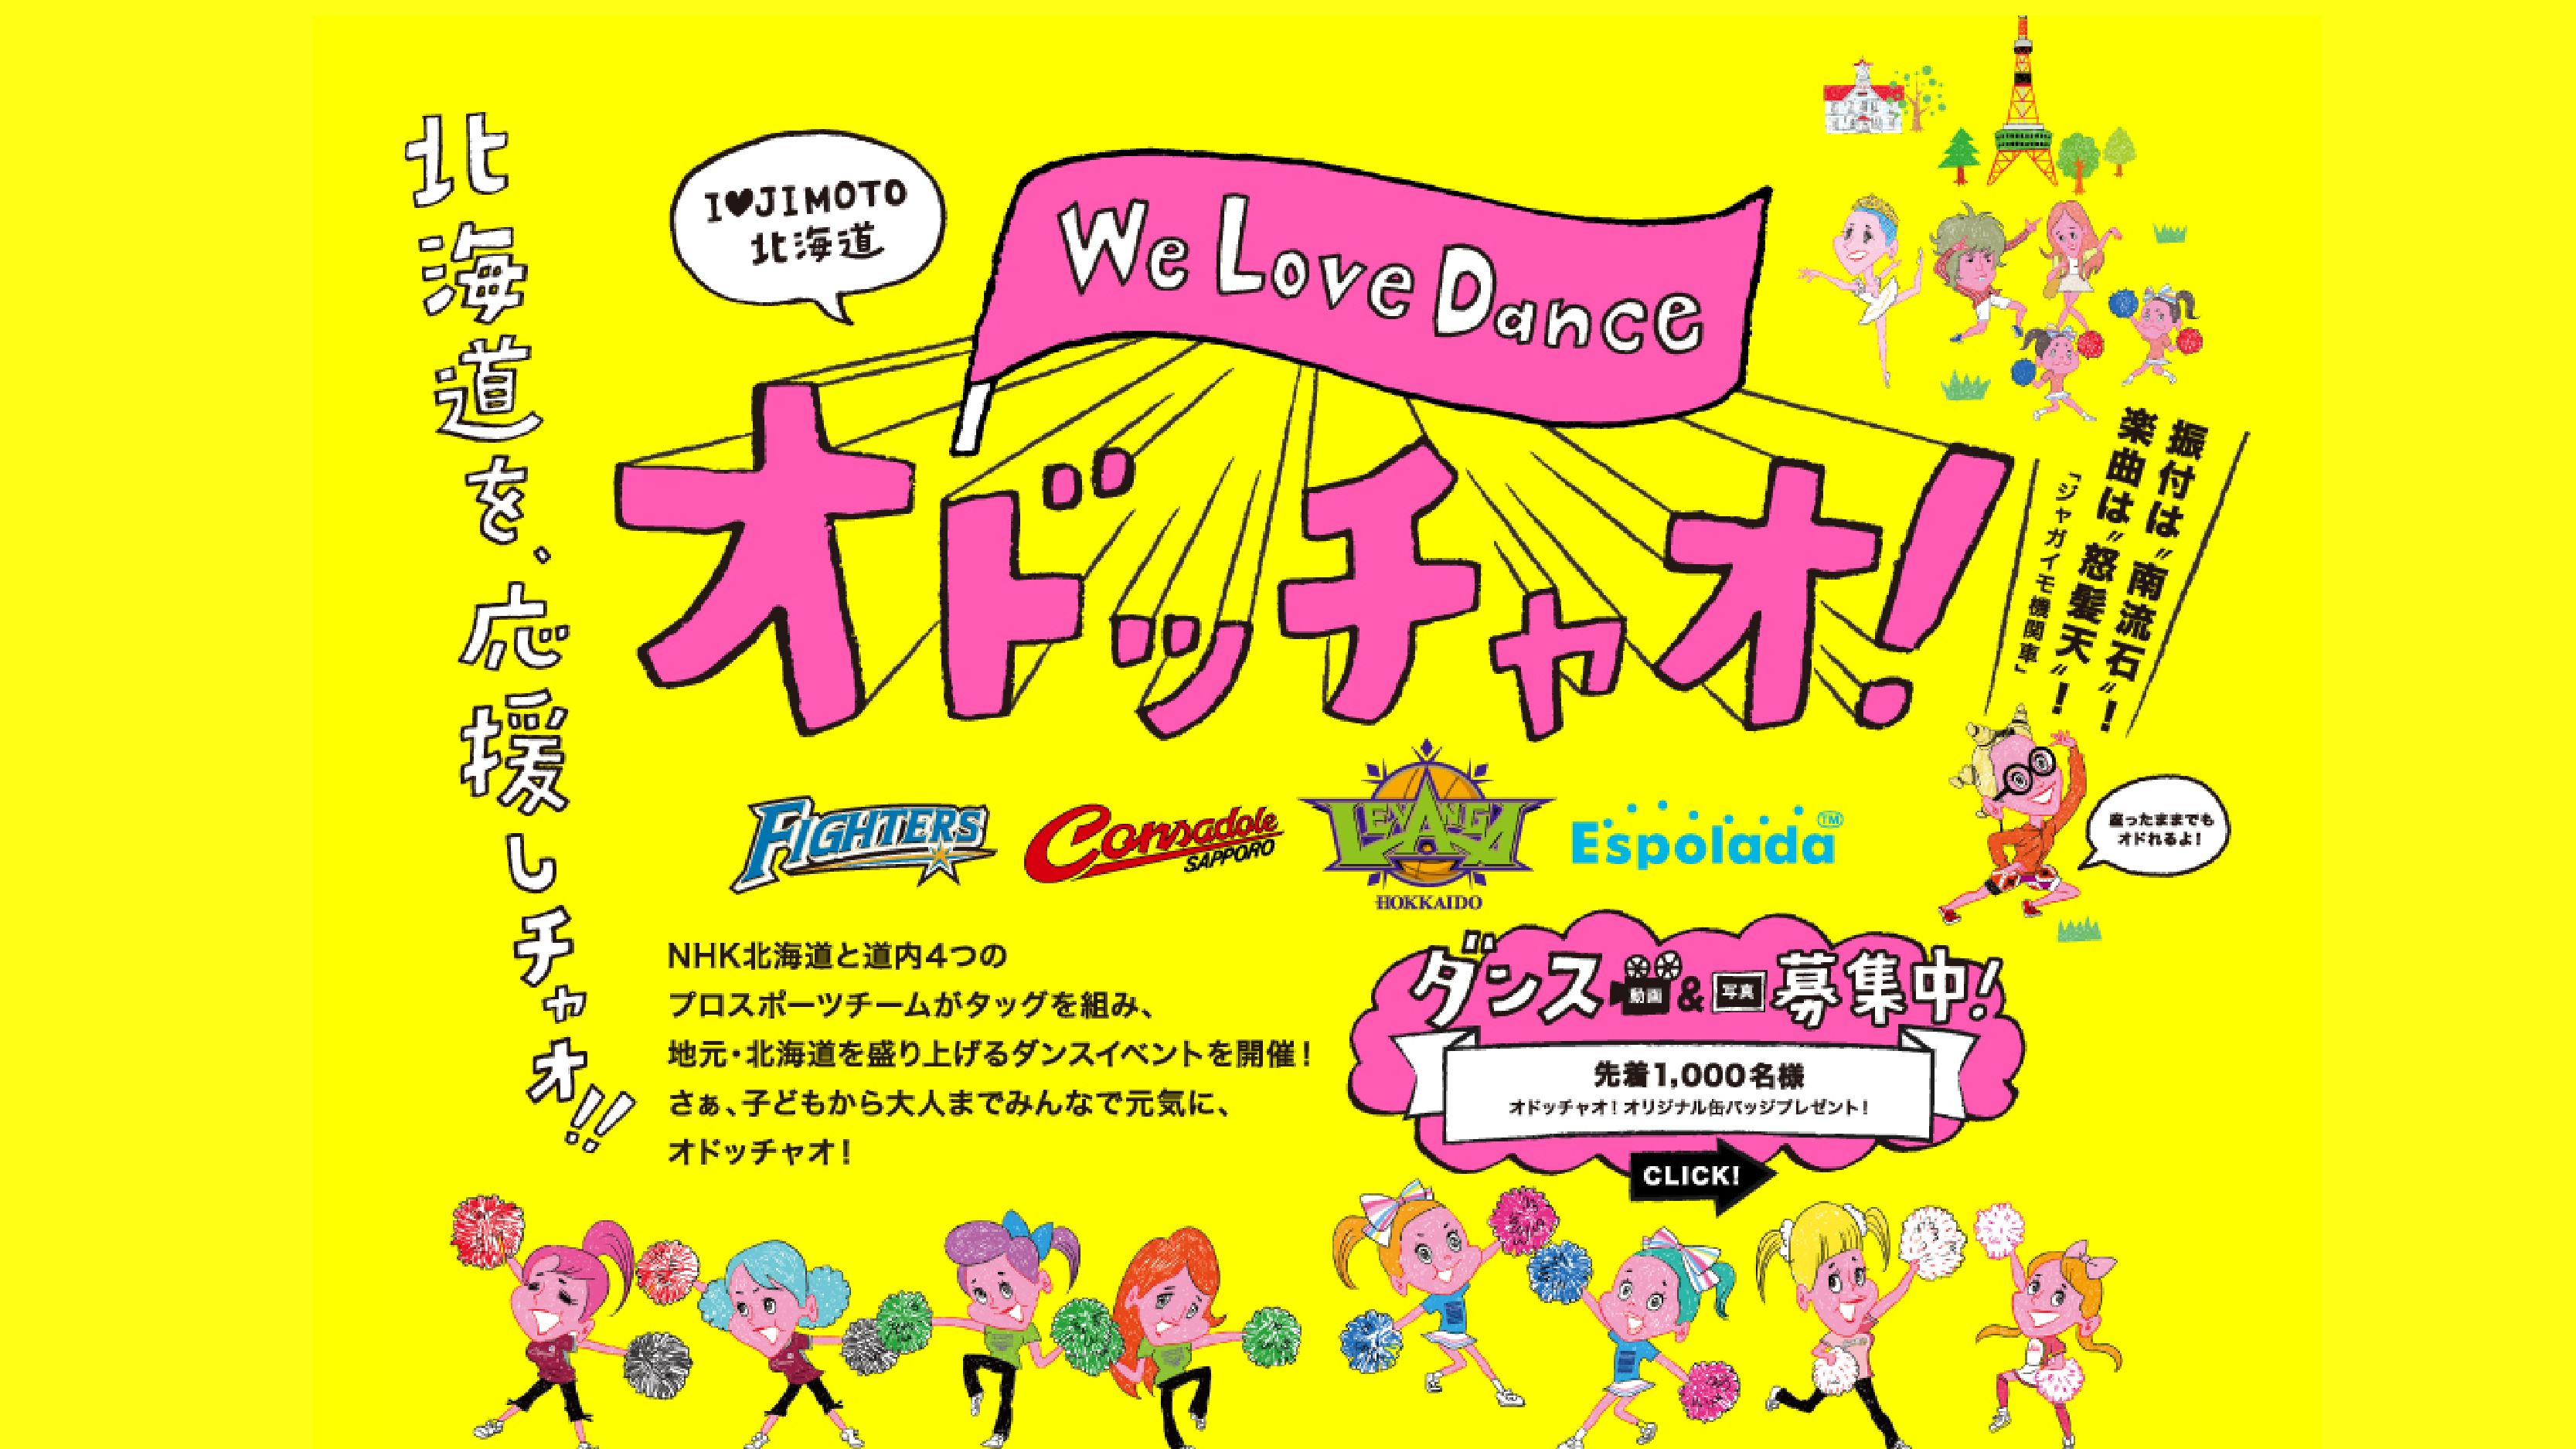 NHK北海道がダンスイベント「オドッチャオ!」を開催！！